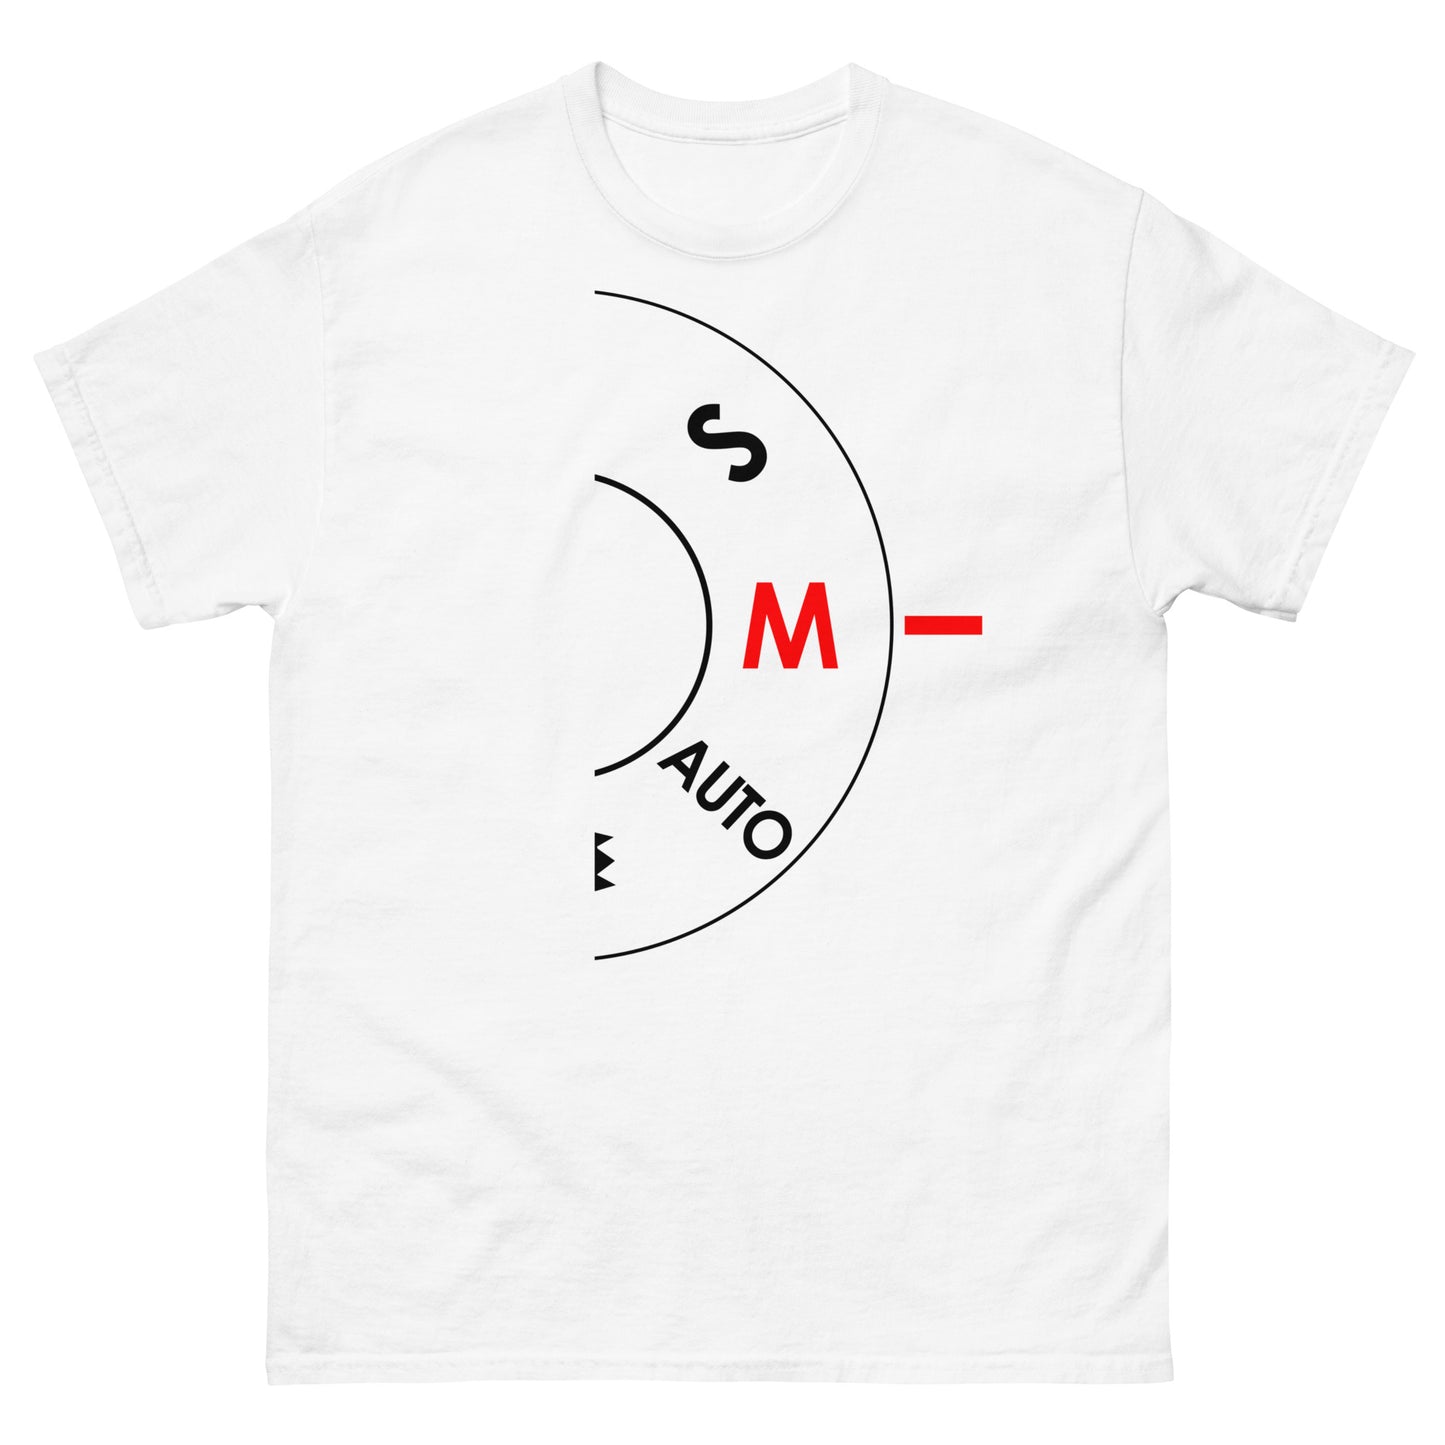 Männer-T-Shirts - Handbuch - Weißes Logo